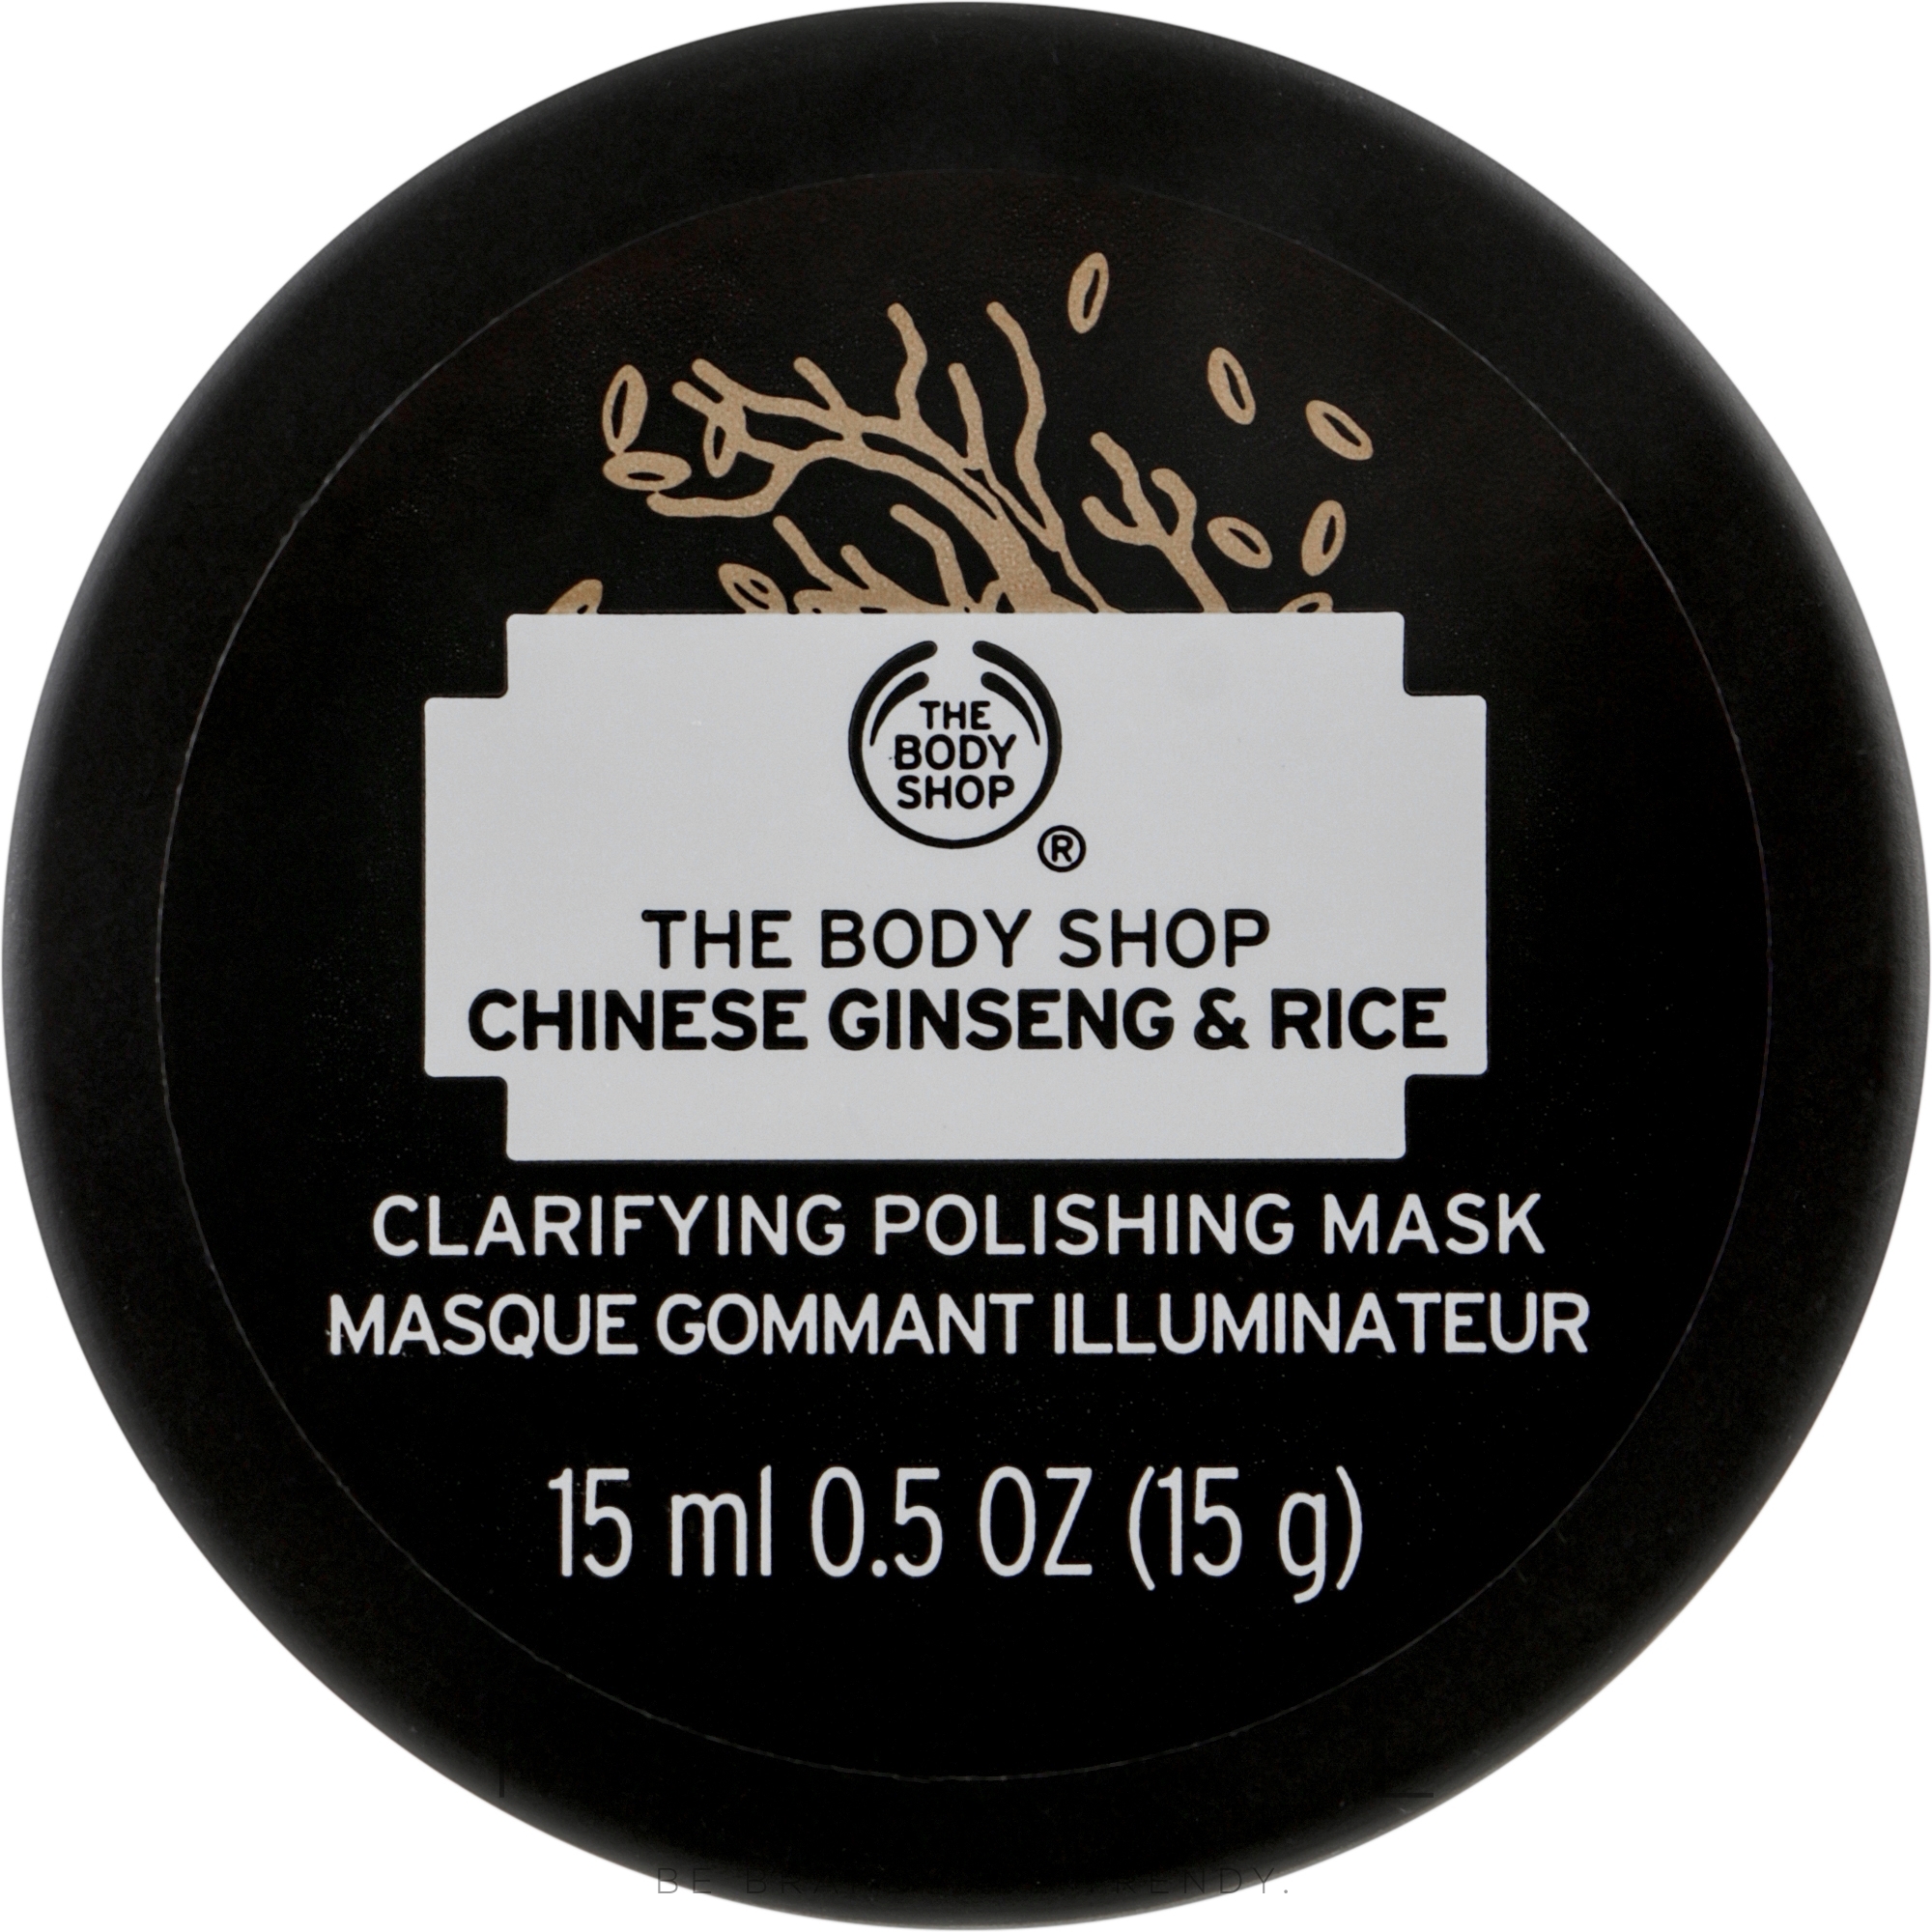 Maska oczyszczająca, Imbir i Ryż - The Body Shop Chinese Ginseng & Rice Clarifying Polishing Mask (miniprodukt) — Zdjęcie 15 ml